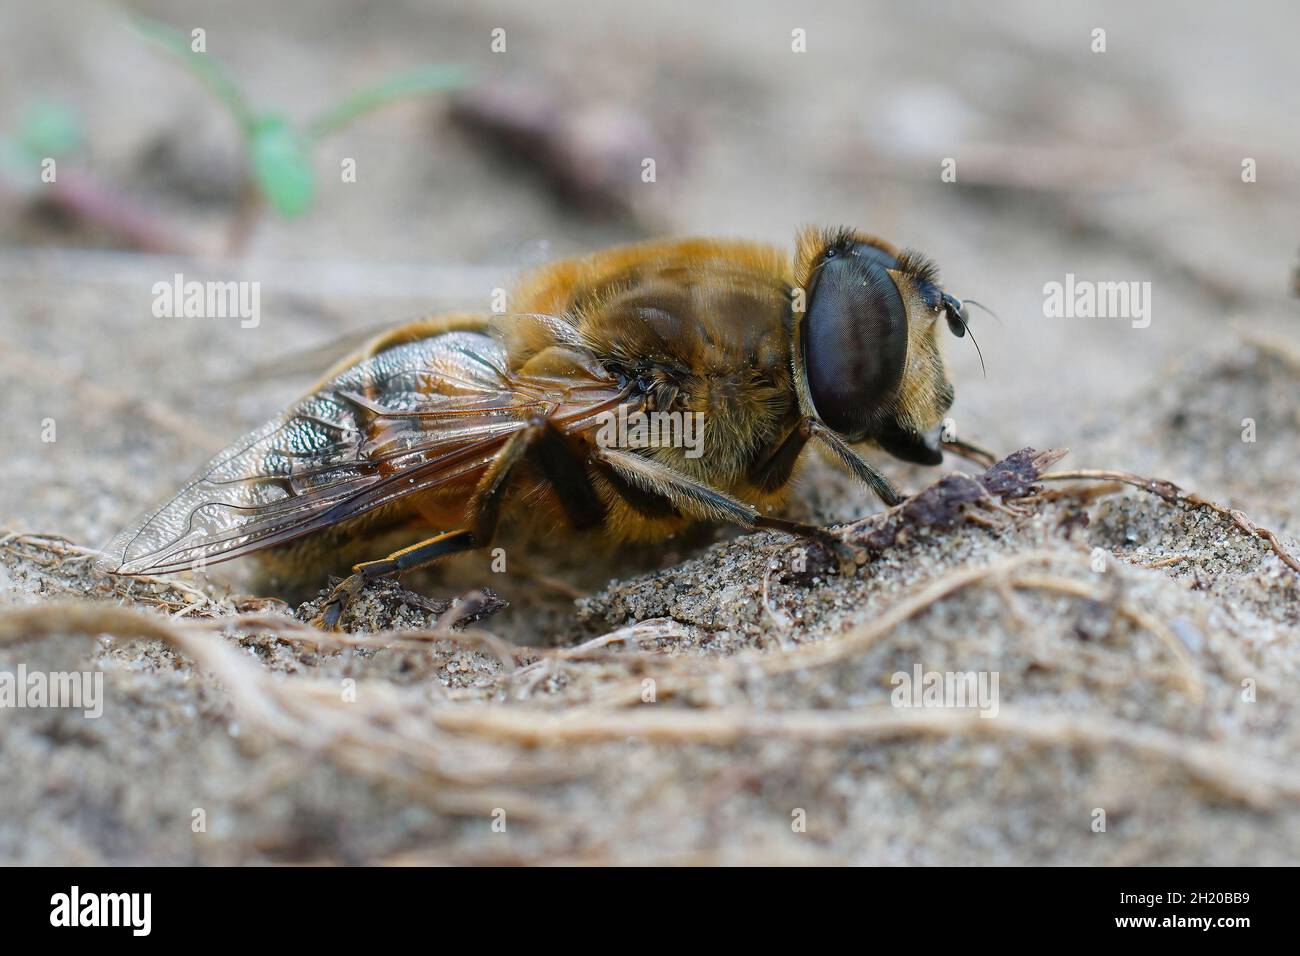 La mosca del drone, Eristalis tenax, è spesso sbagliata per essere un'ape  Foto stock - Alamy